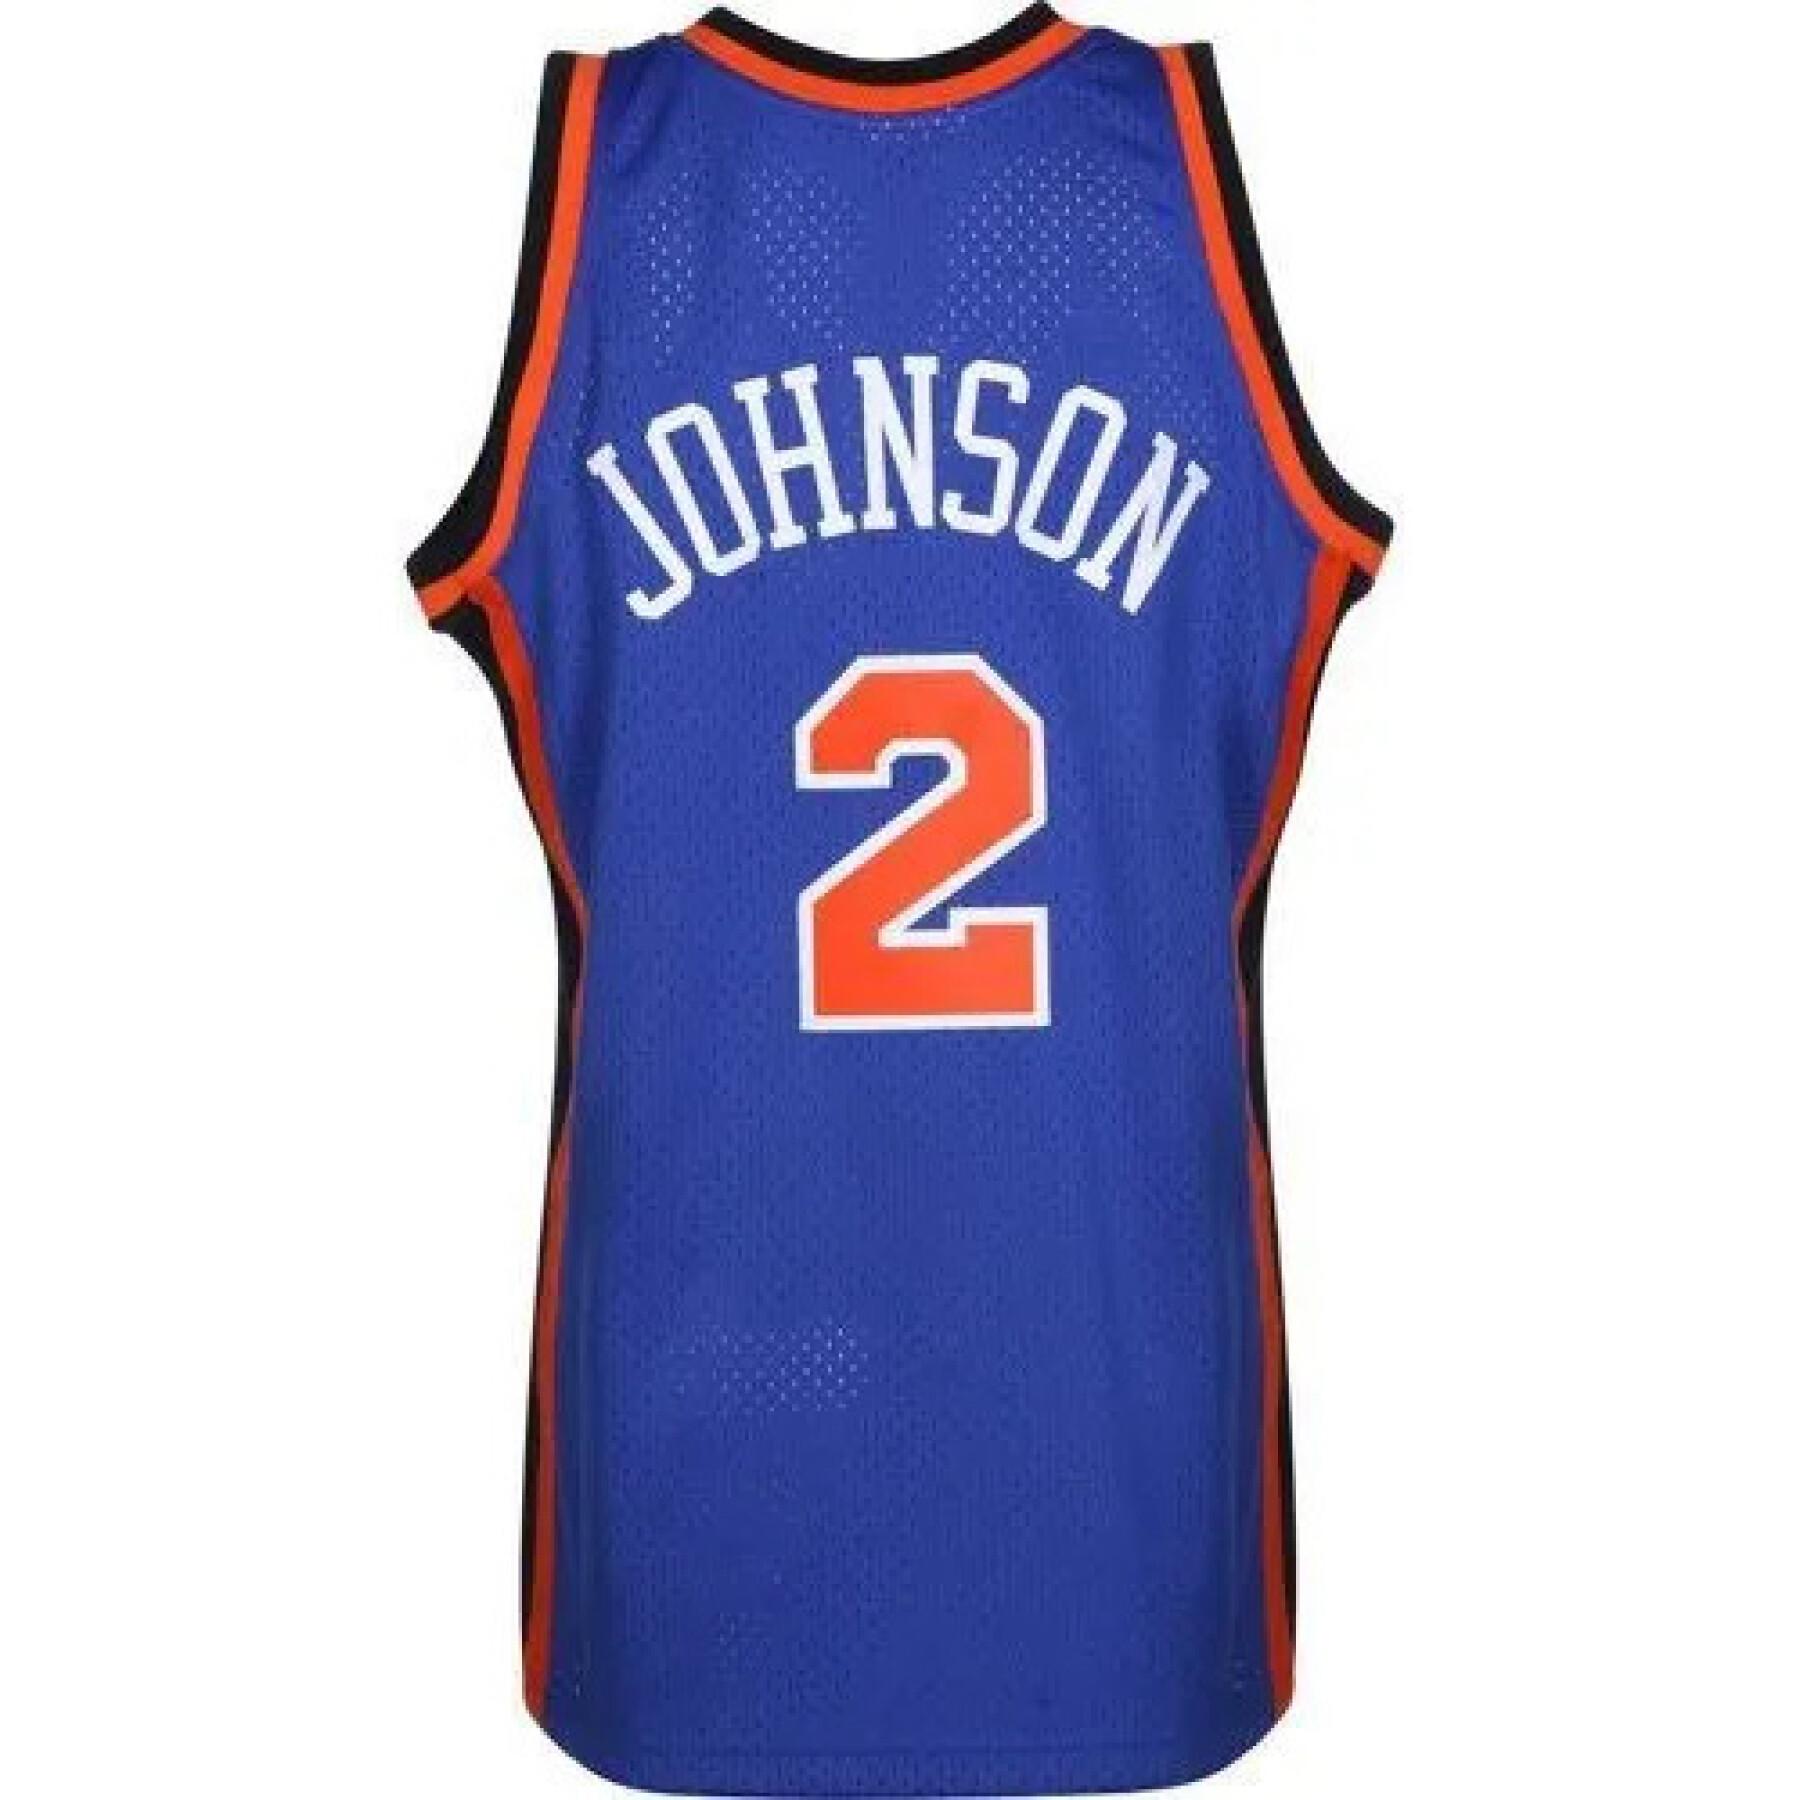 CamisetaNew York Knicks nba - Larry Johnson